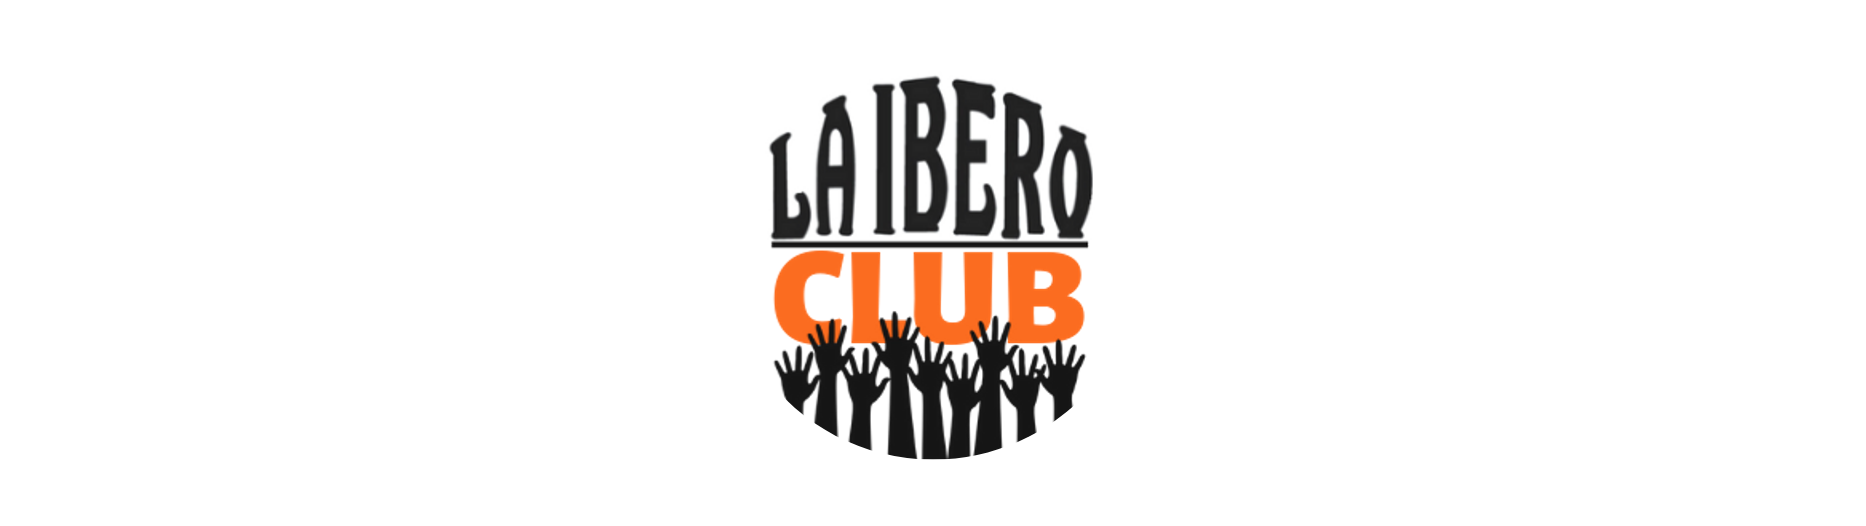 Sumá puntos asociate a la Ibero Club